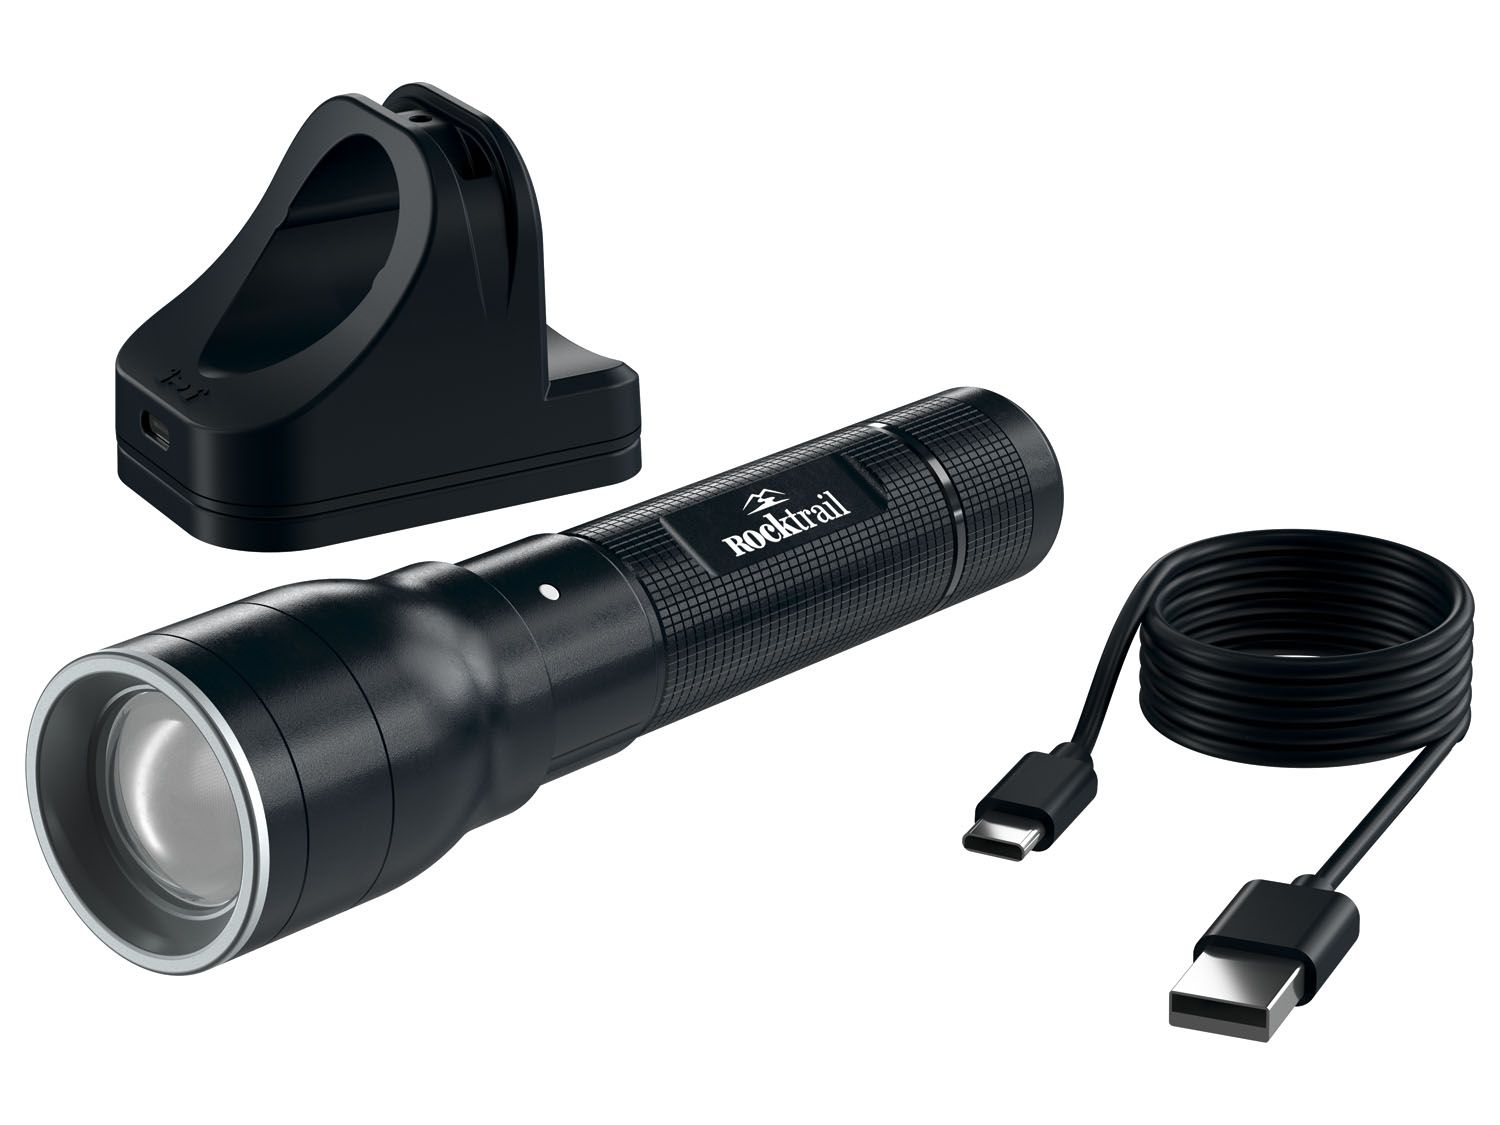 Preisvergleich für Rocktrail Akku-LED-Taschenlampe, Ladendirekt 4055329007724 lm, | aus 1000 Kunststoff, GTIN